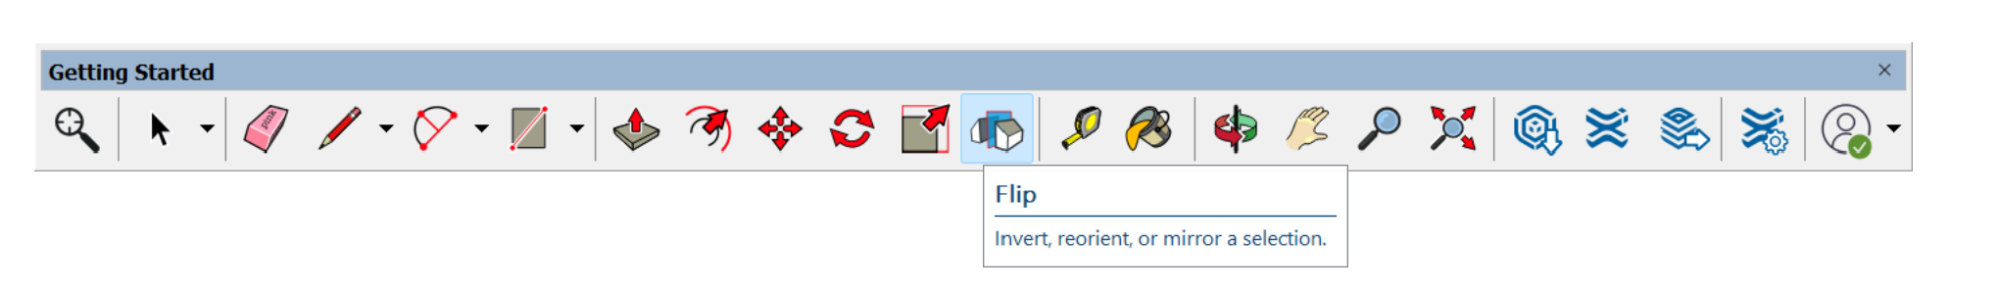 2023rn flip icon